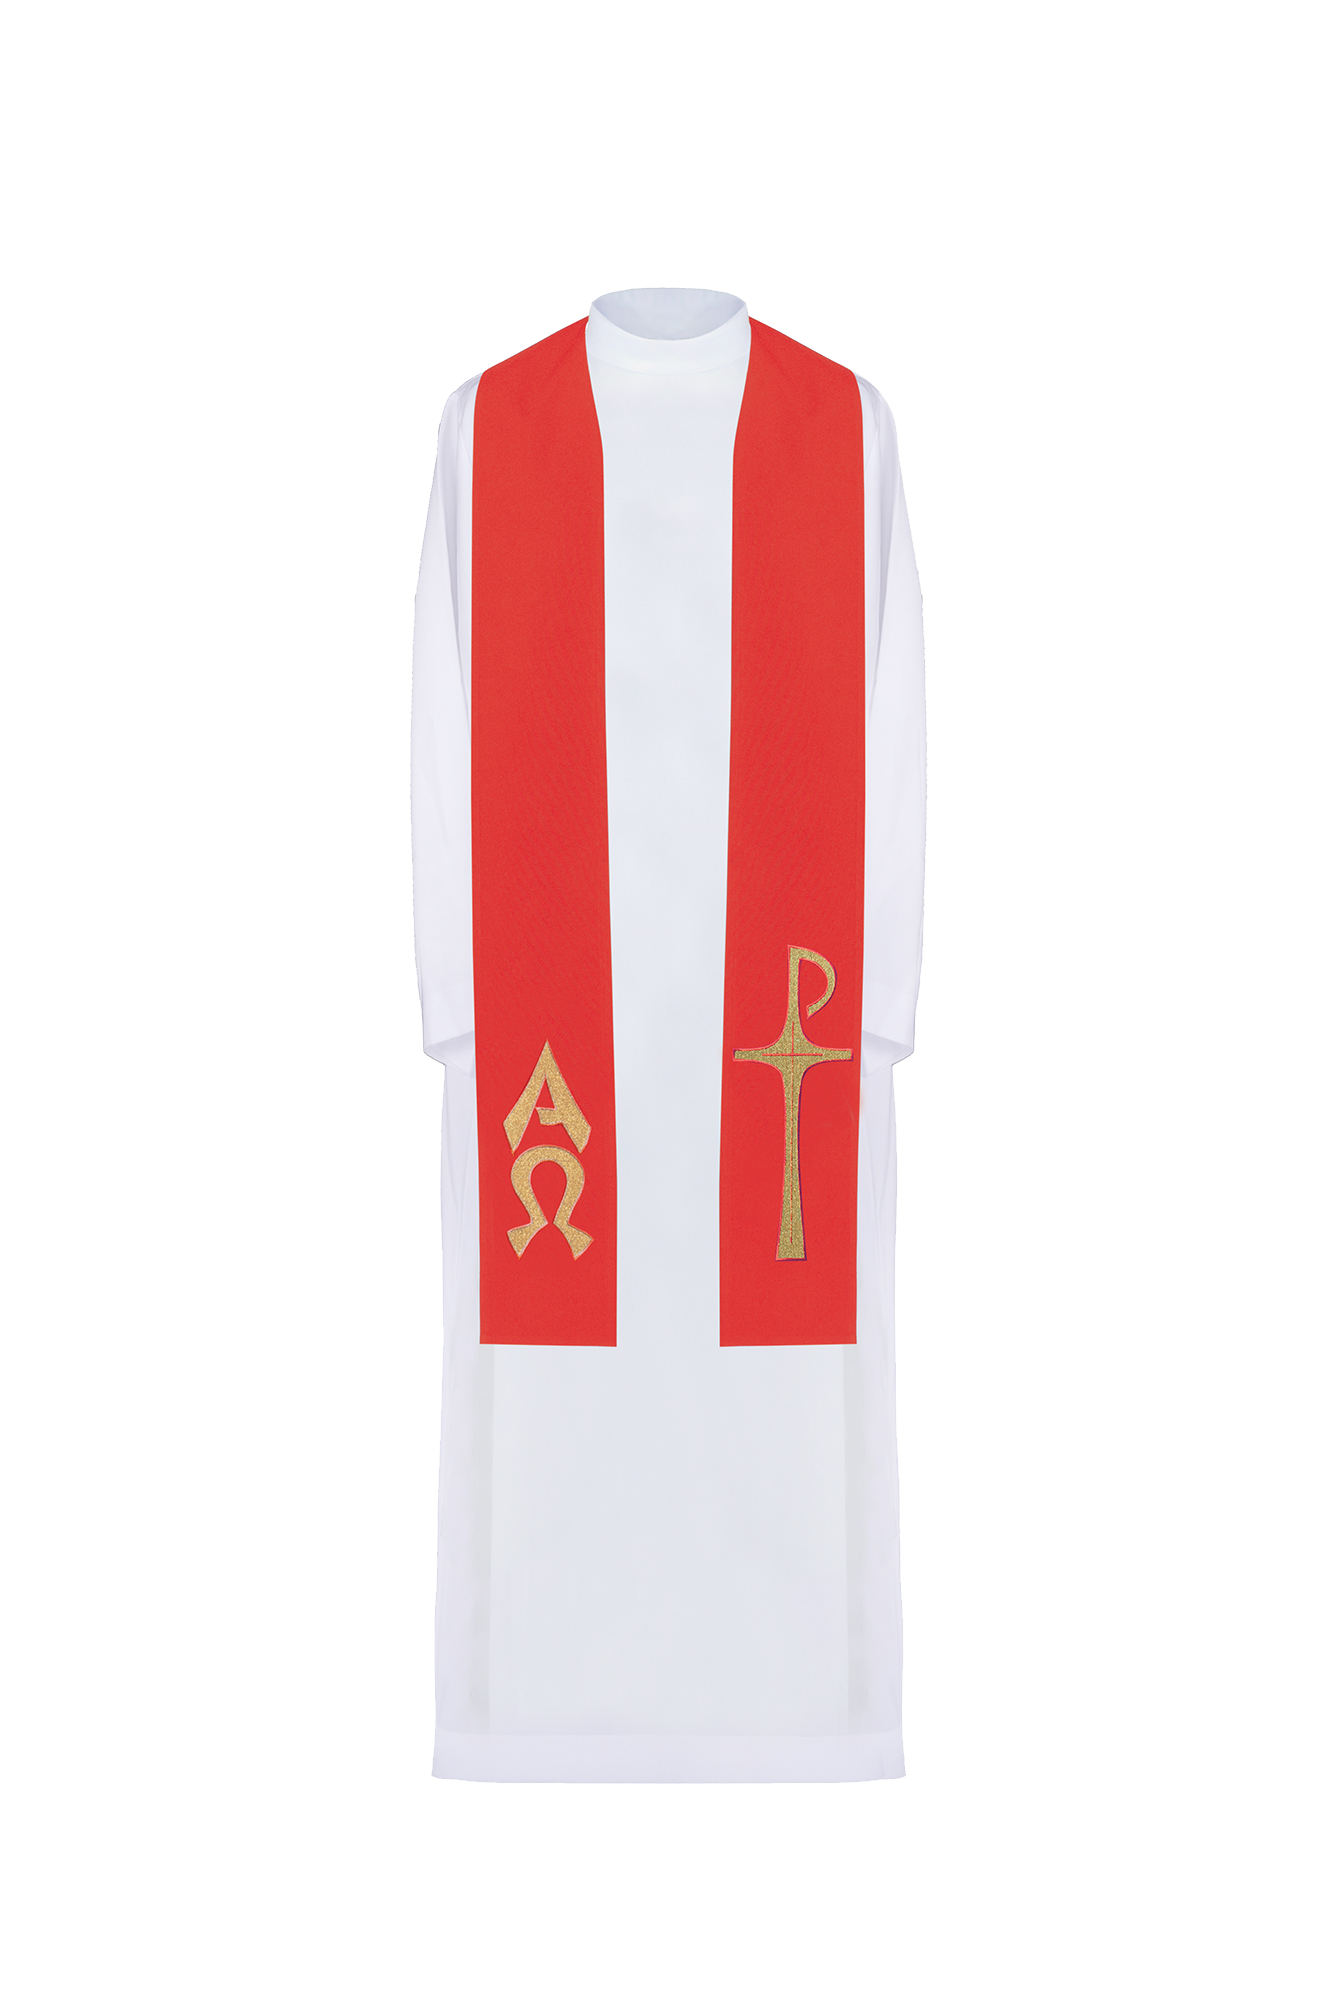 Stuła kapłańska haftowana z motywem Alfa i Omega w kolorze czerwonym